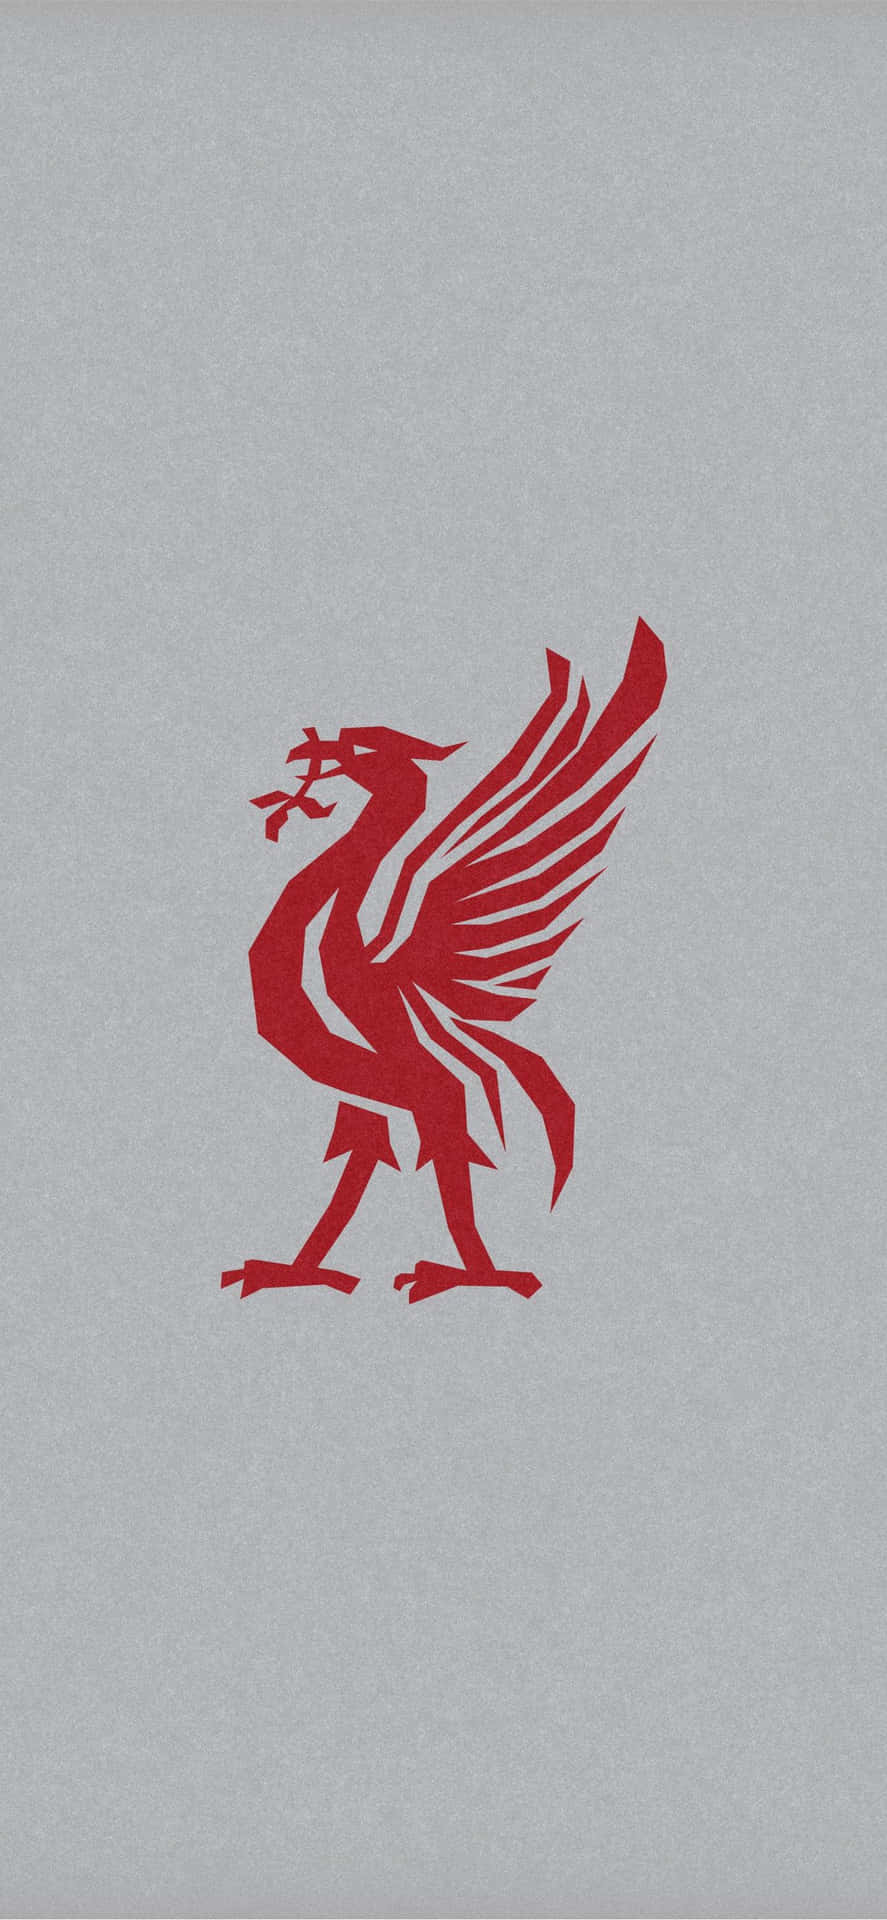 Zeigensie Stolz Ihre Liverpool F.c.-begeisterung Mit Dem Offiziellen Liverpool Iphone-hintergrund. Wallpaper